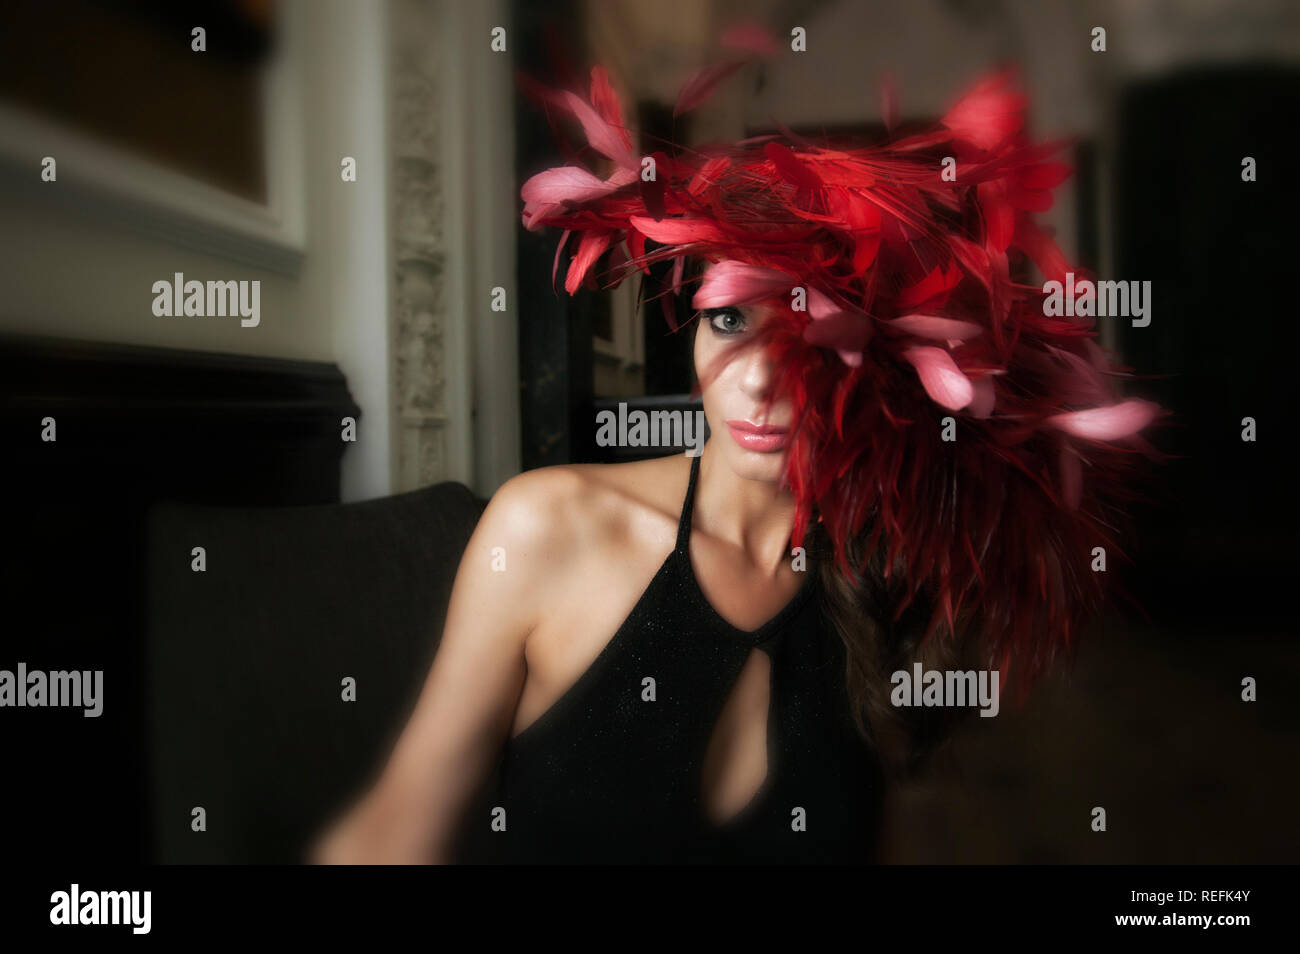 Photographie de mode de modèle de maturité wearing red feather fascinator Banque D'Images